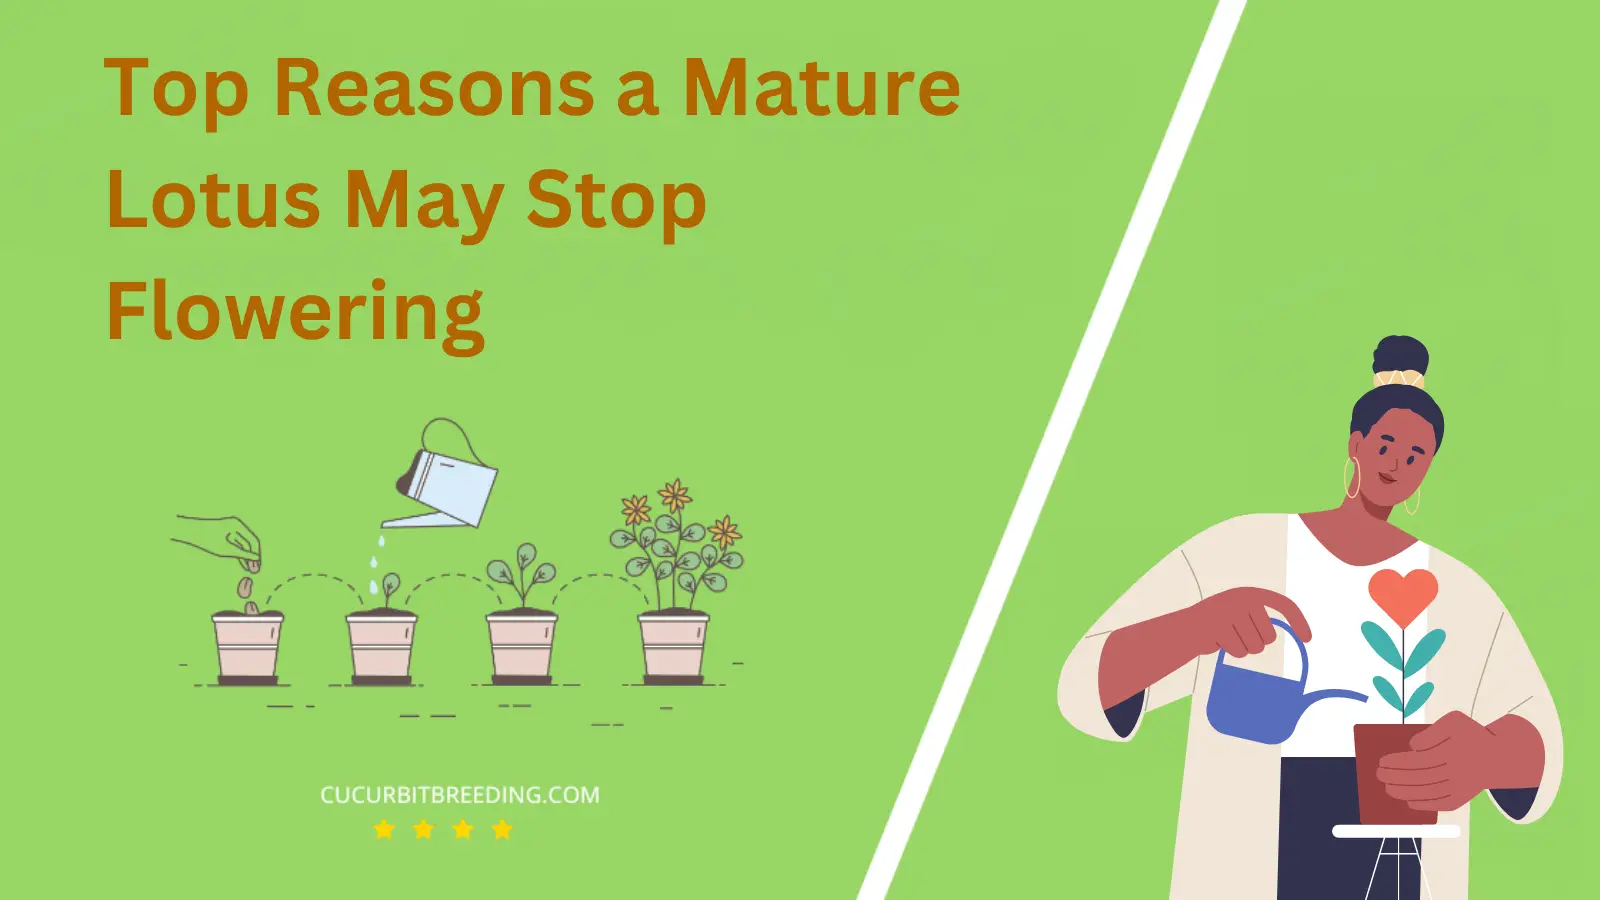 Top Reasons a Mature Lotus May Stop Flowering